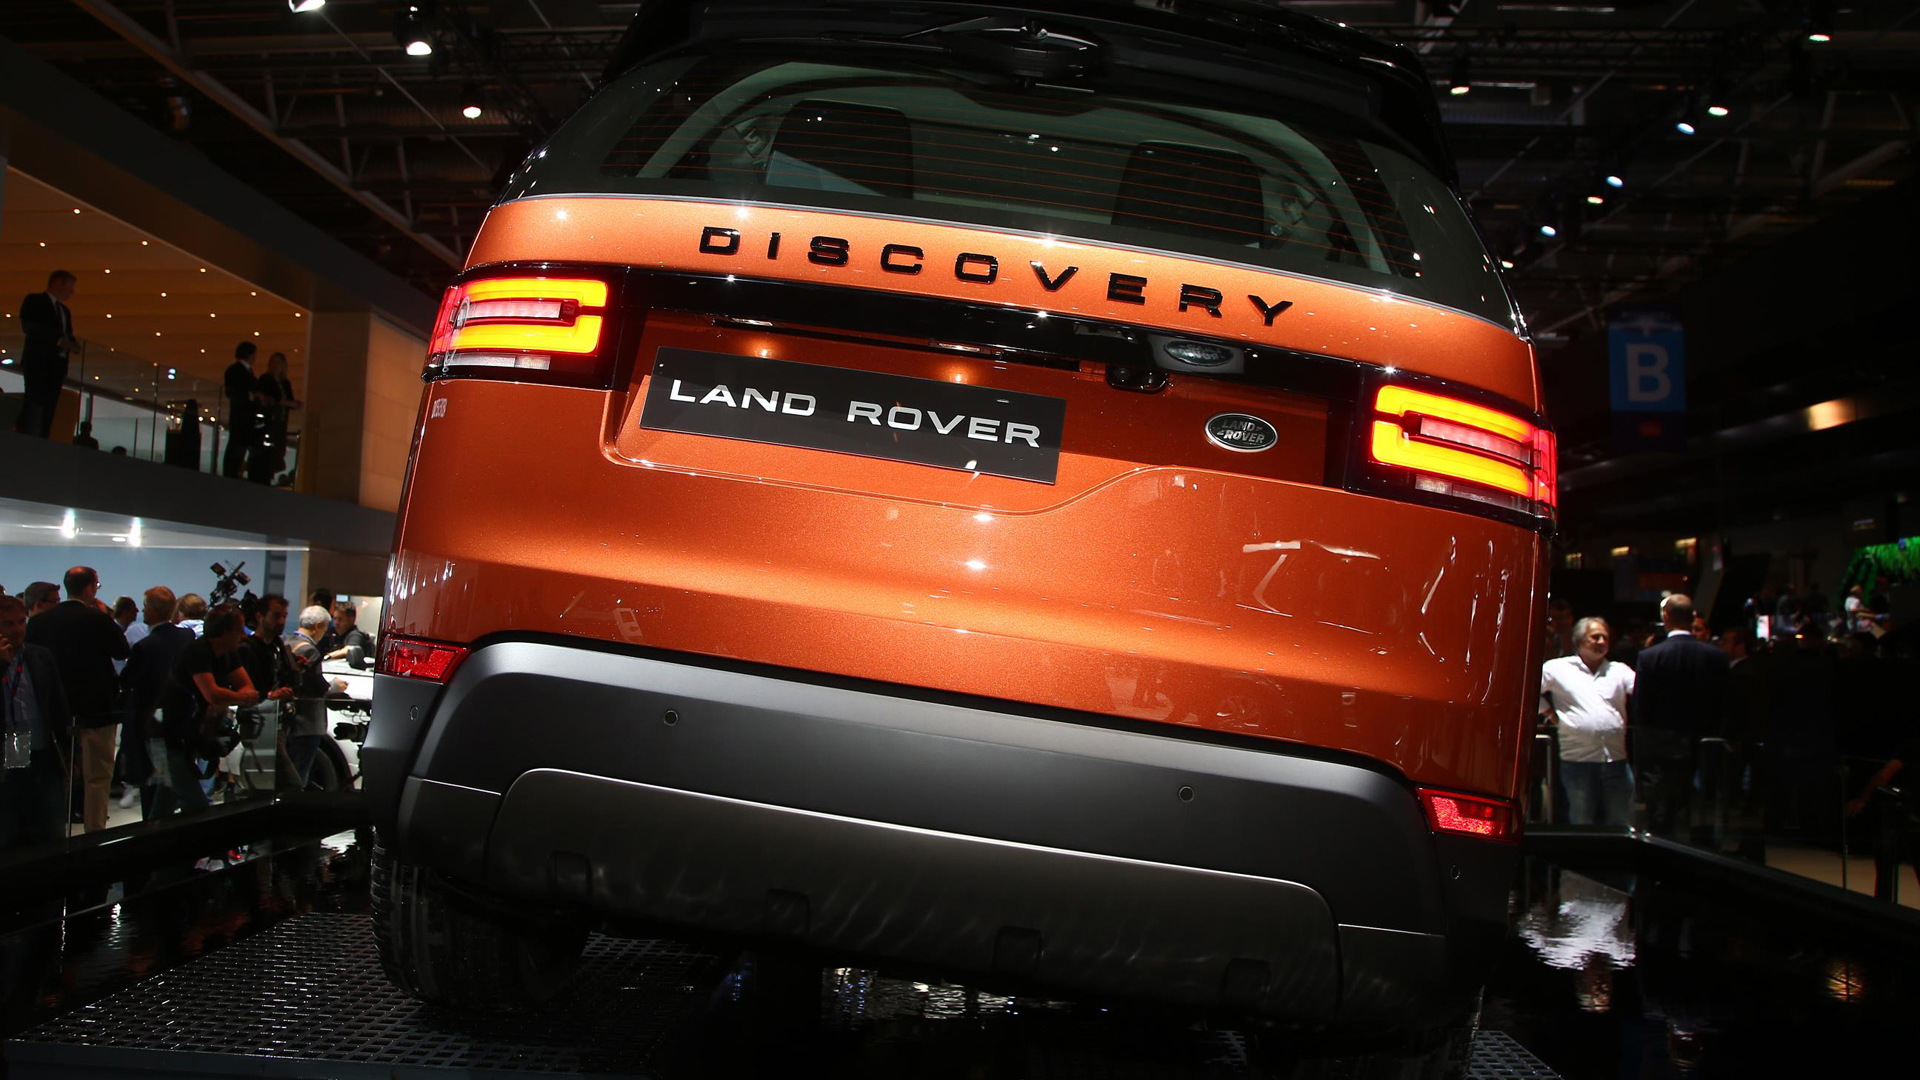 2017 Land Rover Discovery, 2016 Paris auto show